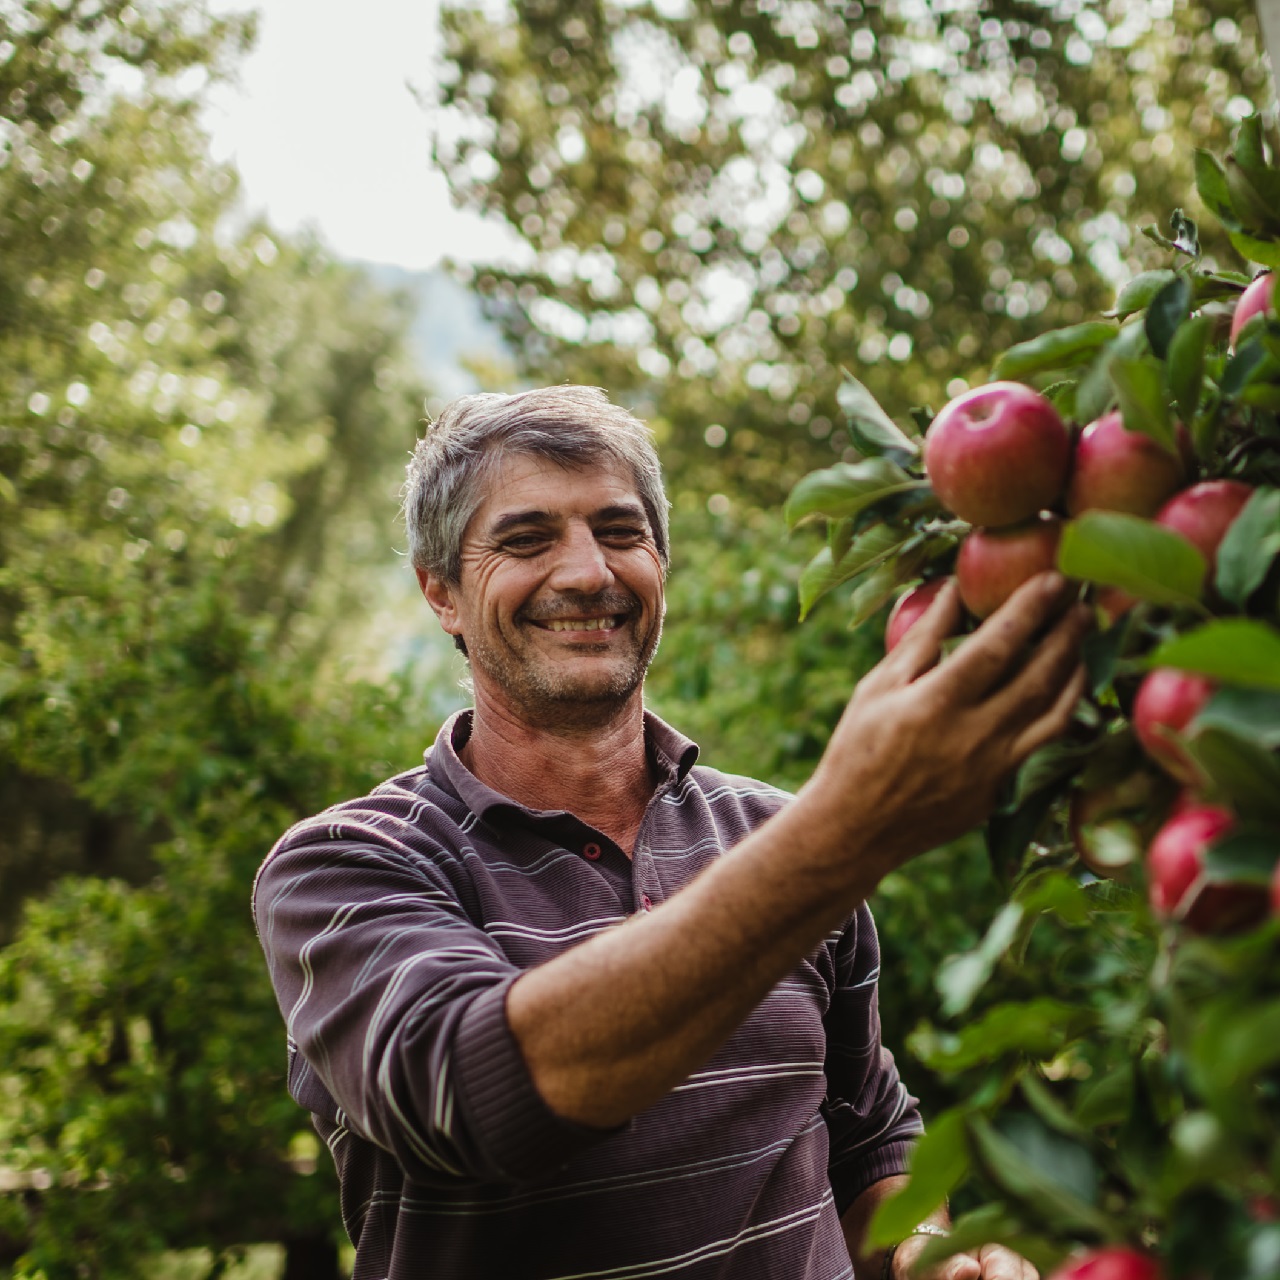 Waalhof organic farm holidays, apple picking